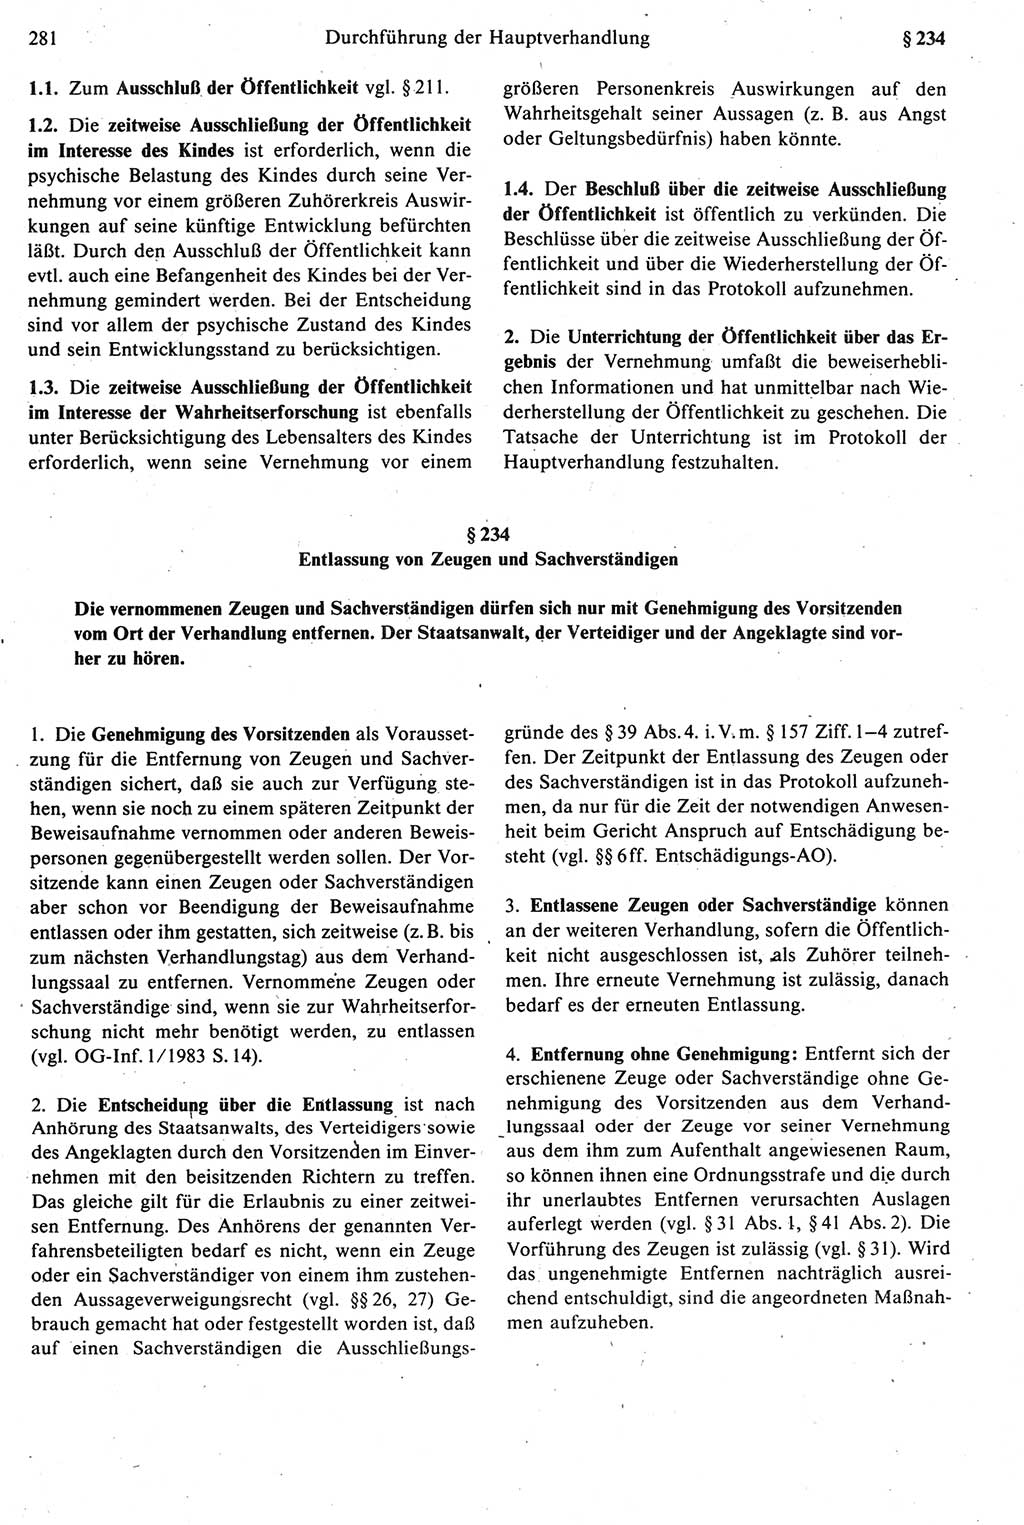 Strafprozeßrecht der DDR [Deutsche Demokratische Republik], Kommentar zur Strafprozeßordnung (StPO) 1987, Seite 281 (Strafprozeßr. DDR Komm. StPO 1987, S. 281)